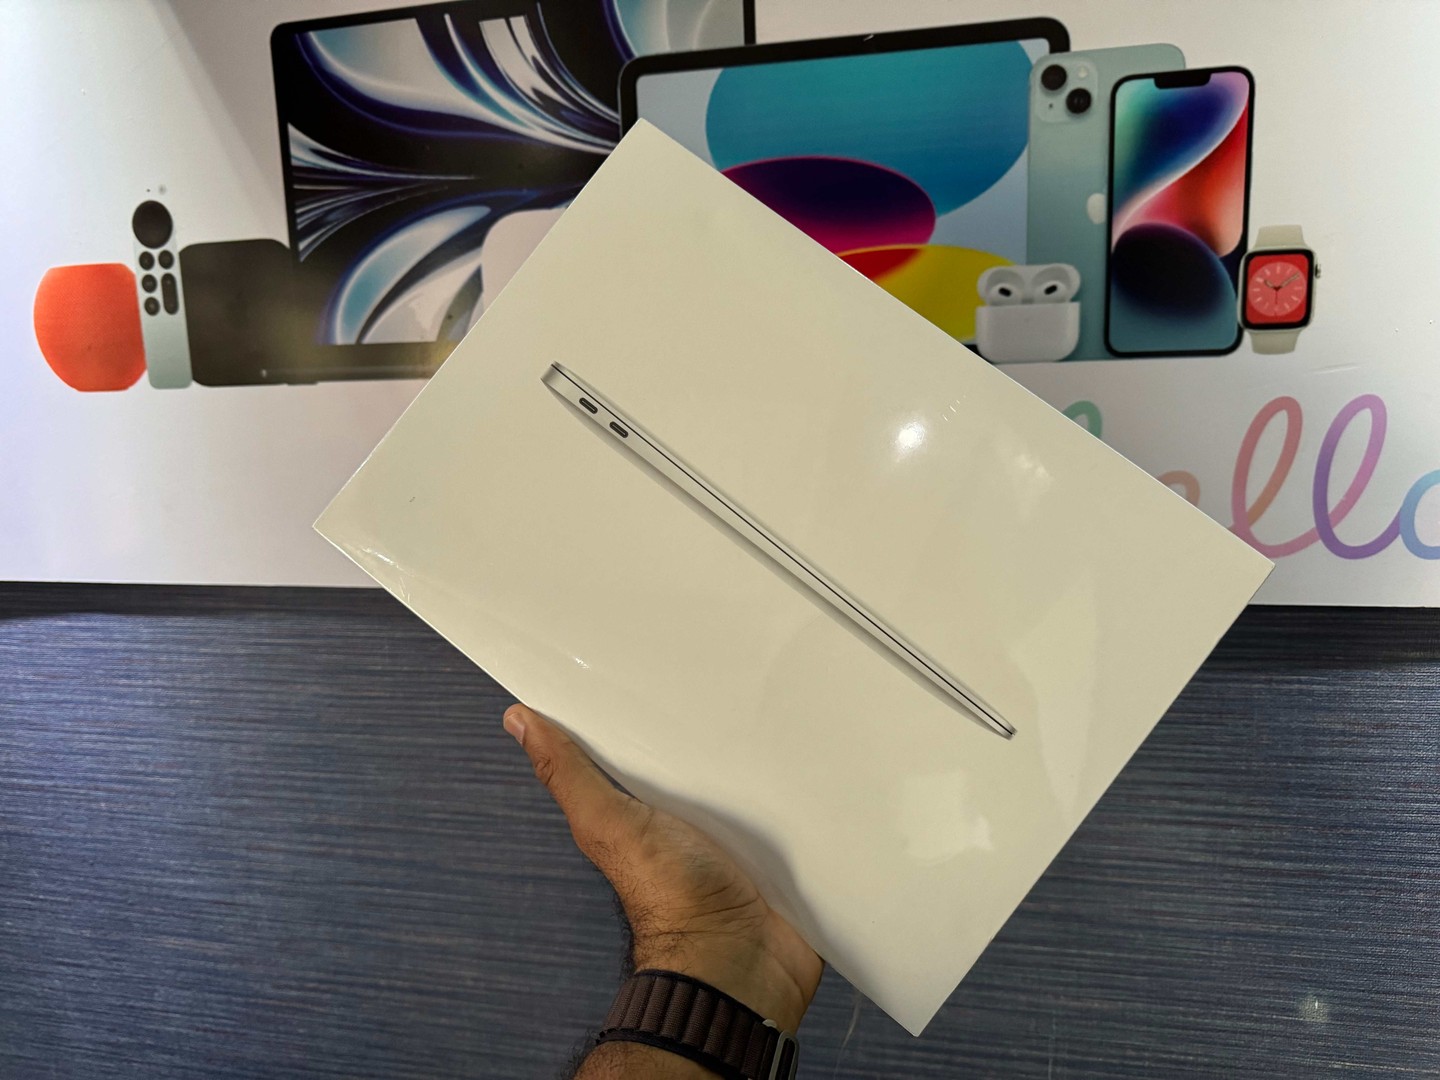 computadoras y laptops - MacBook Air 2020 13 inch/ M1 Apple Chip/ 256GB / 8GB RAM Sellada RD$ 49,500 NEG